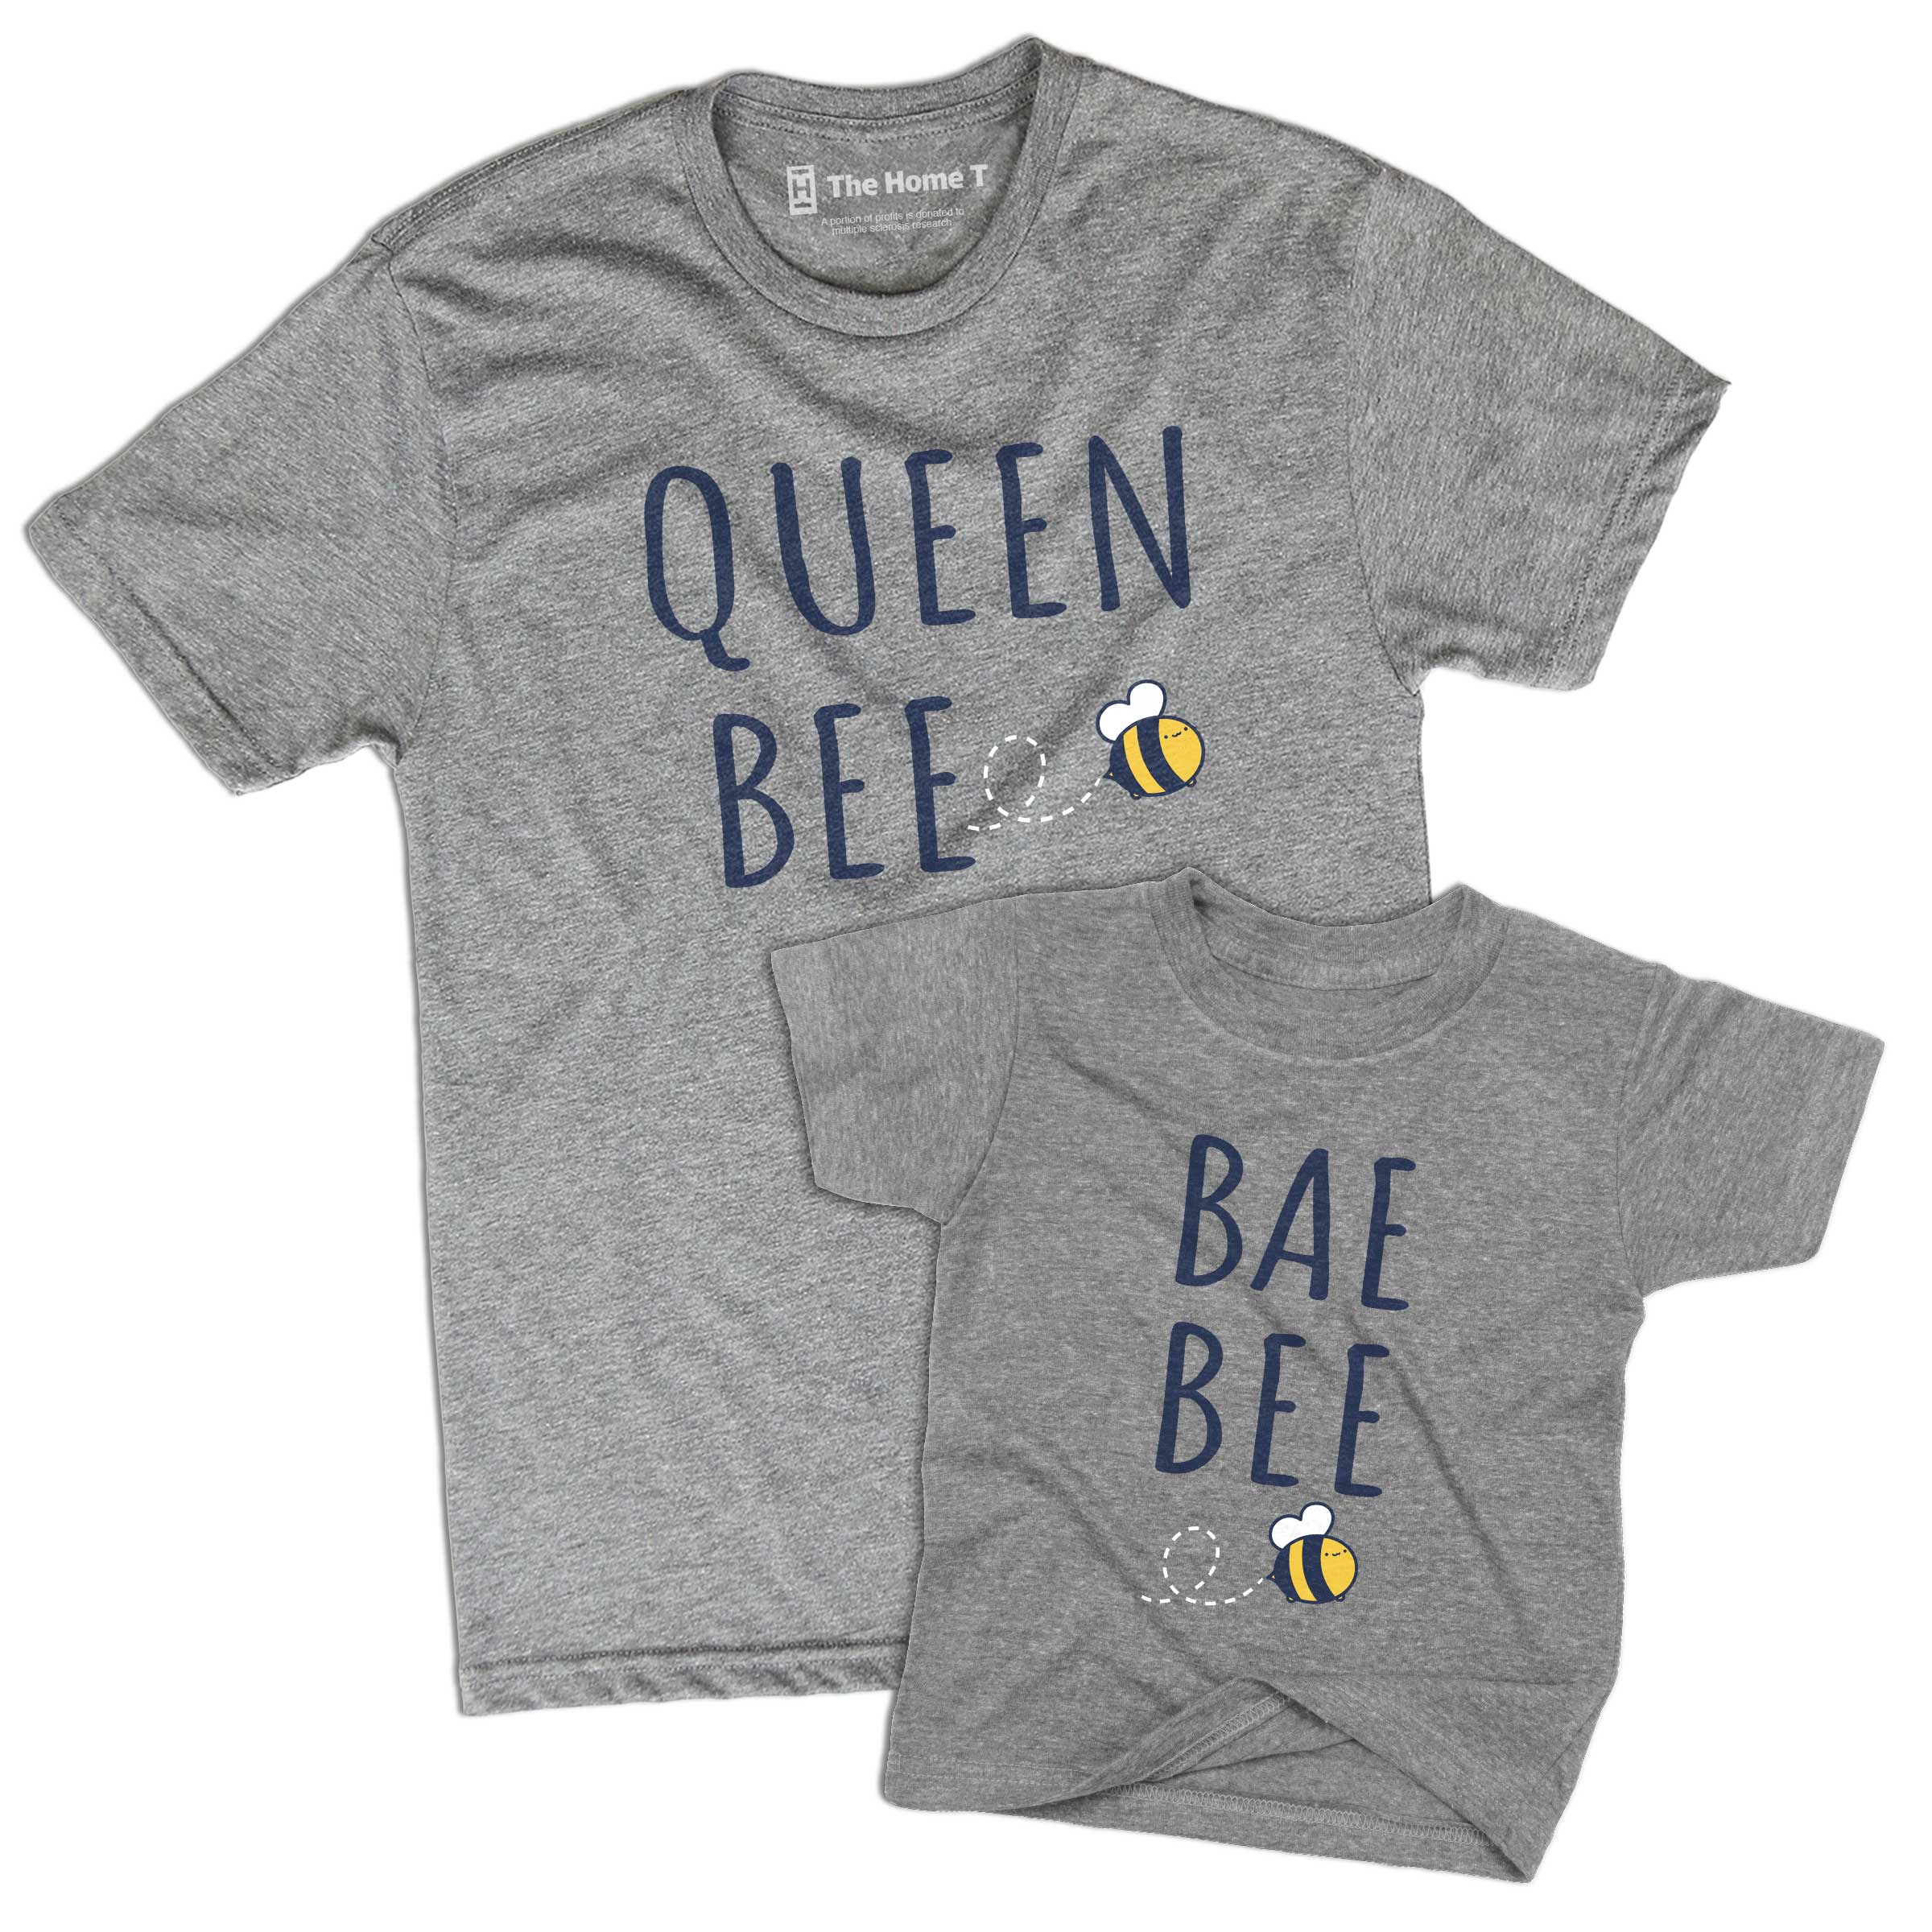 Queen Bee & Bae Bee (Matching Set)